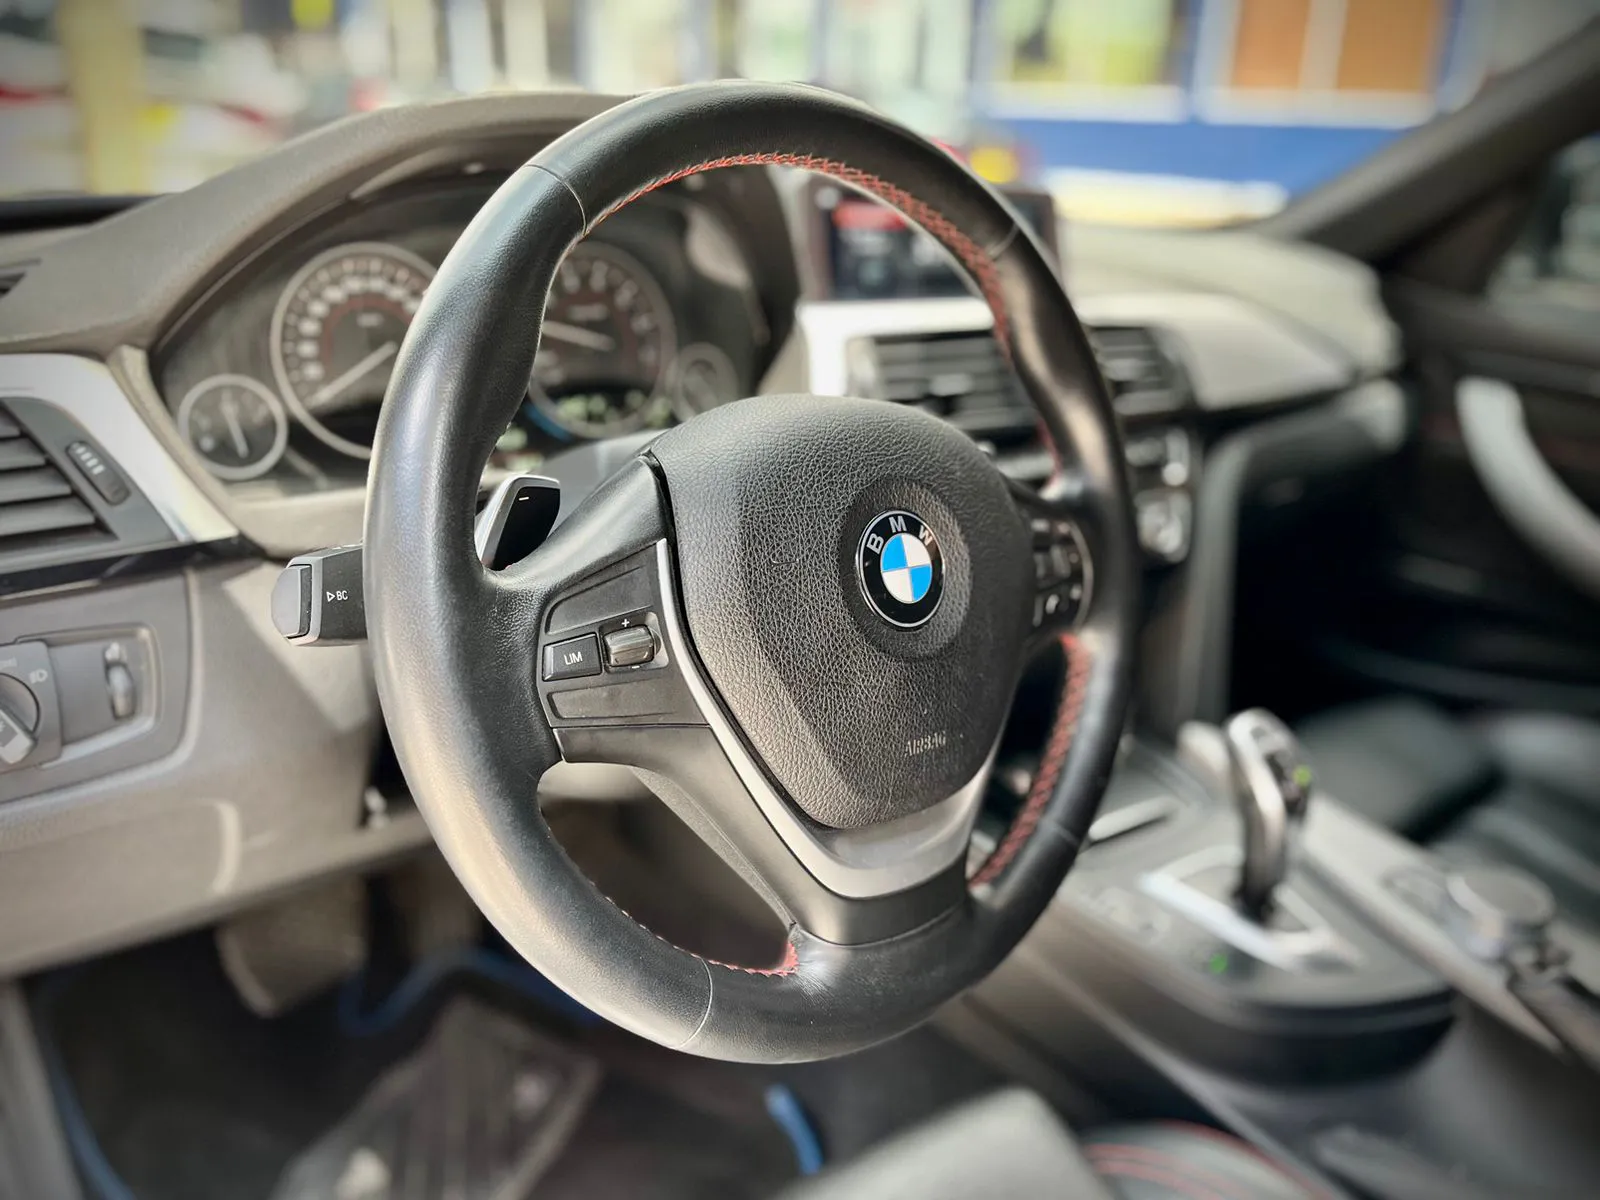 BMW CARROS 420i F33 Cabriolet Executive 2020